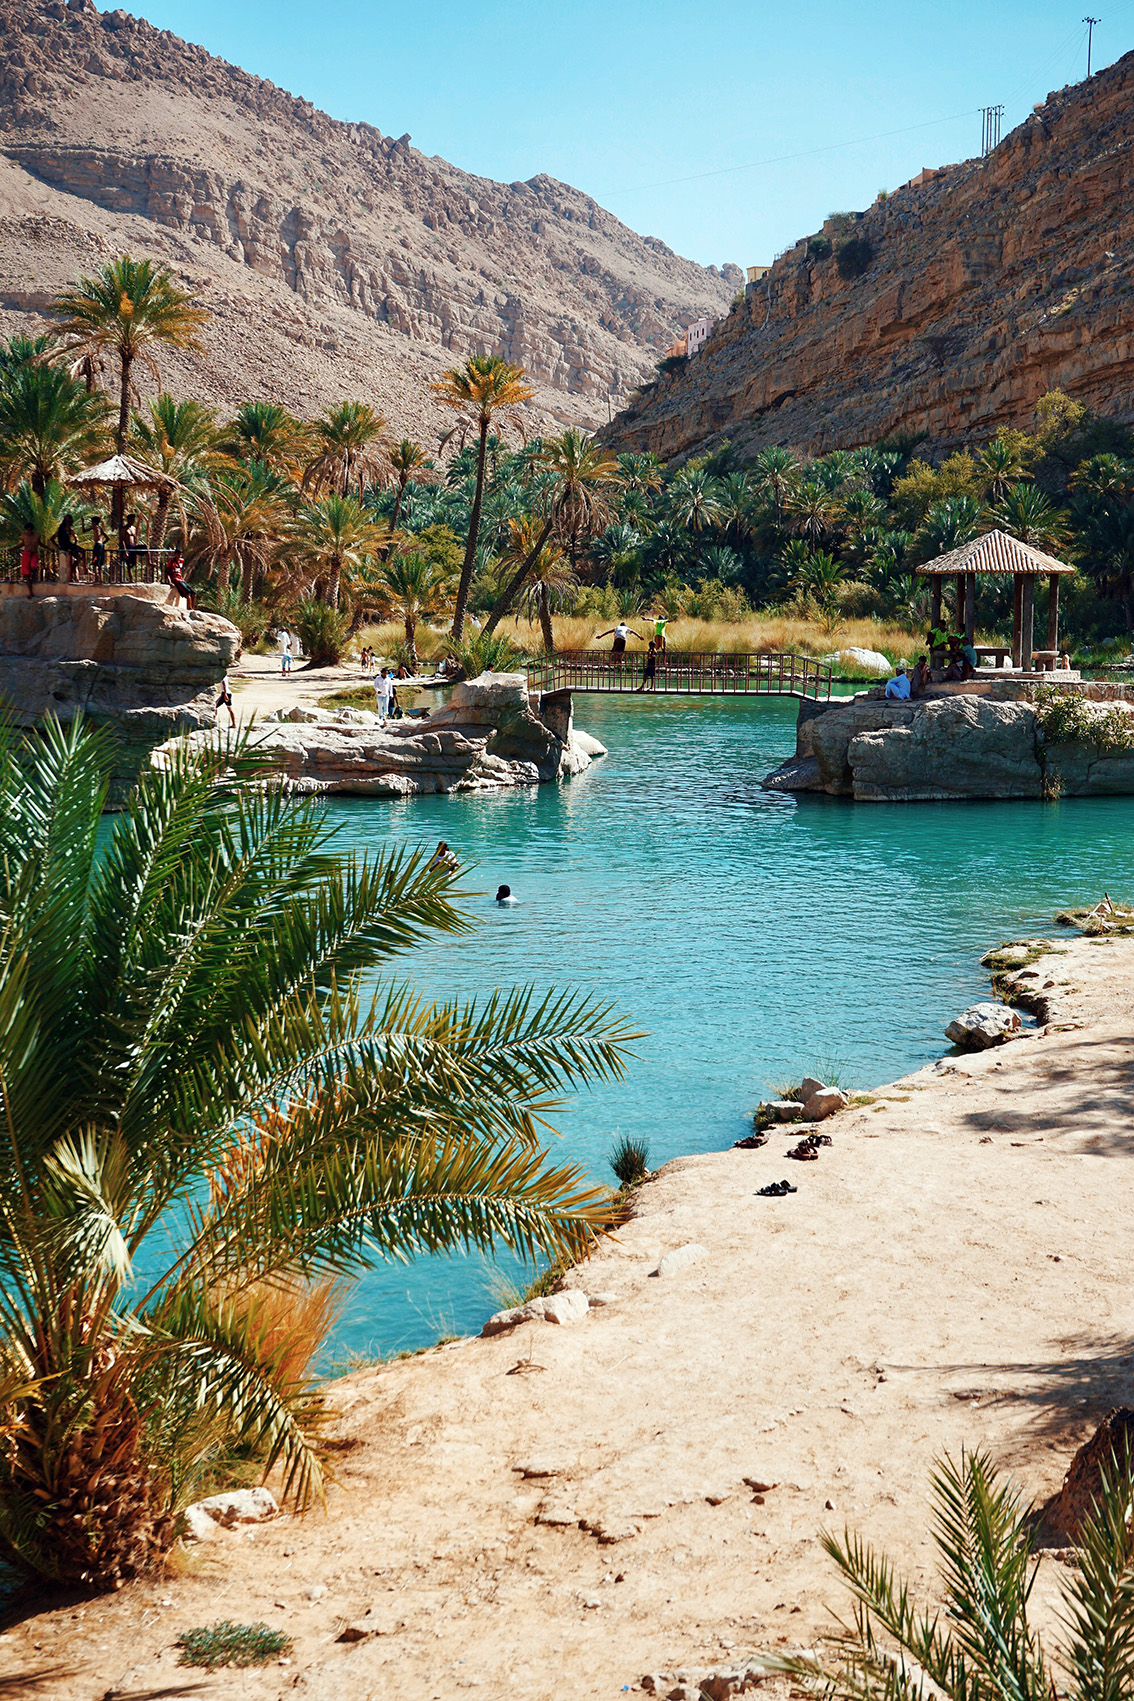 40 La mia avventura in Oman, i luoghi imperdibili da vedere.